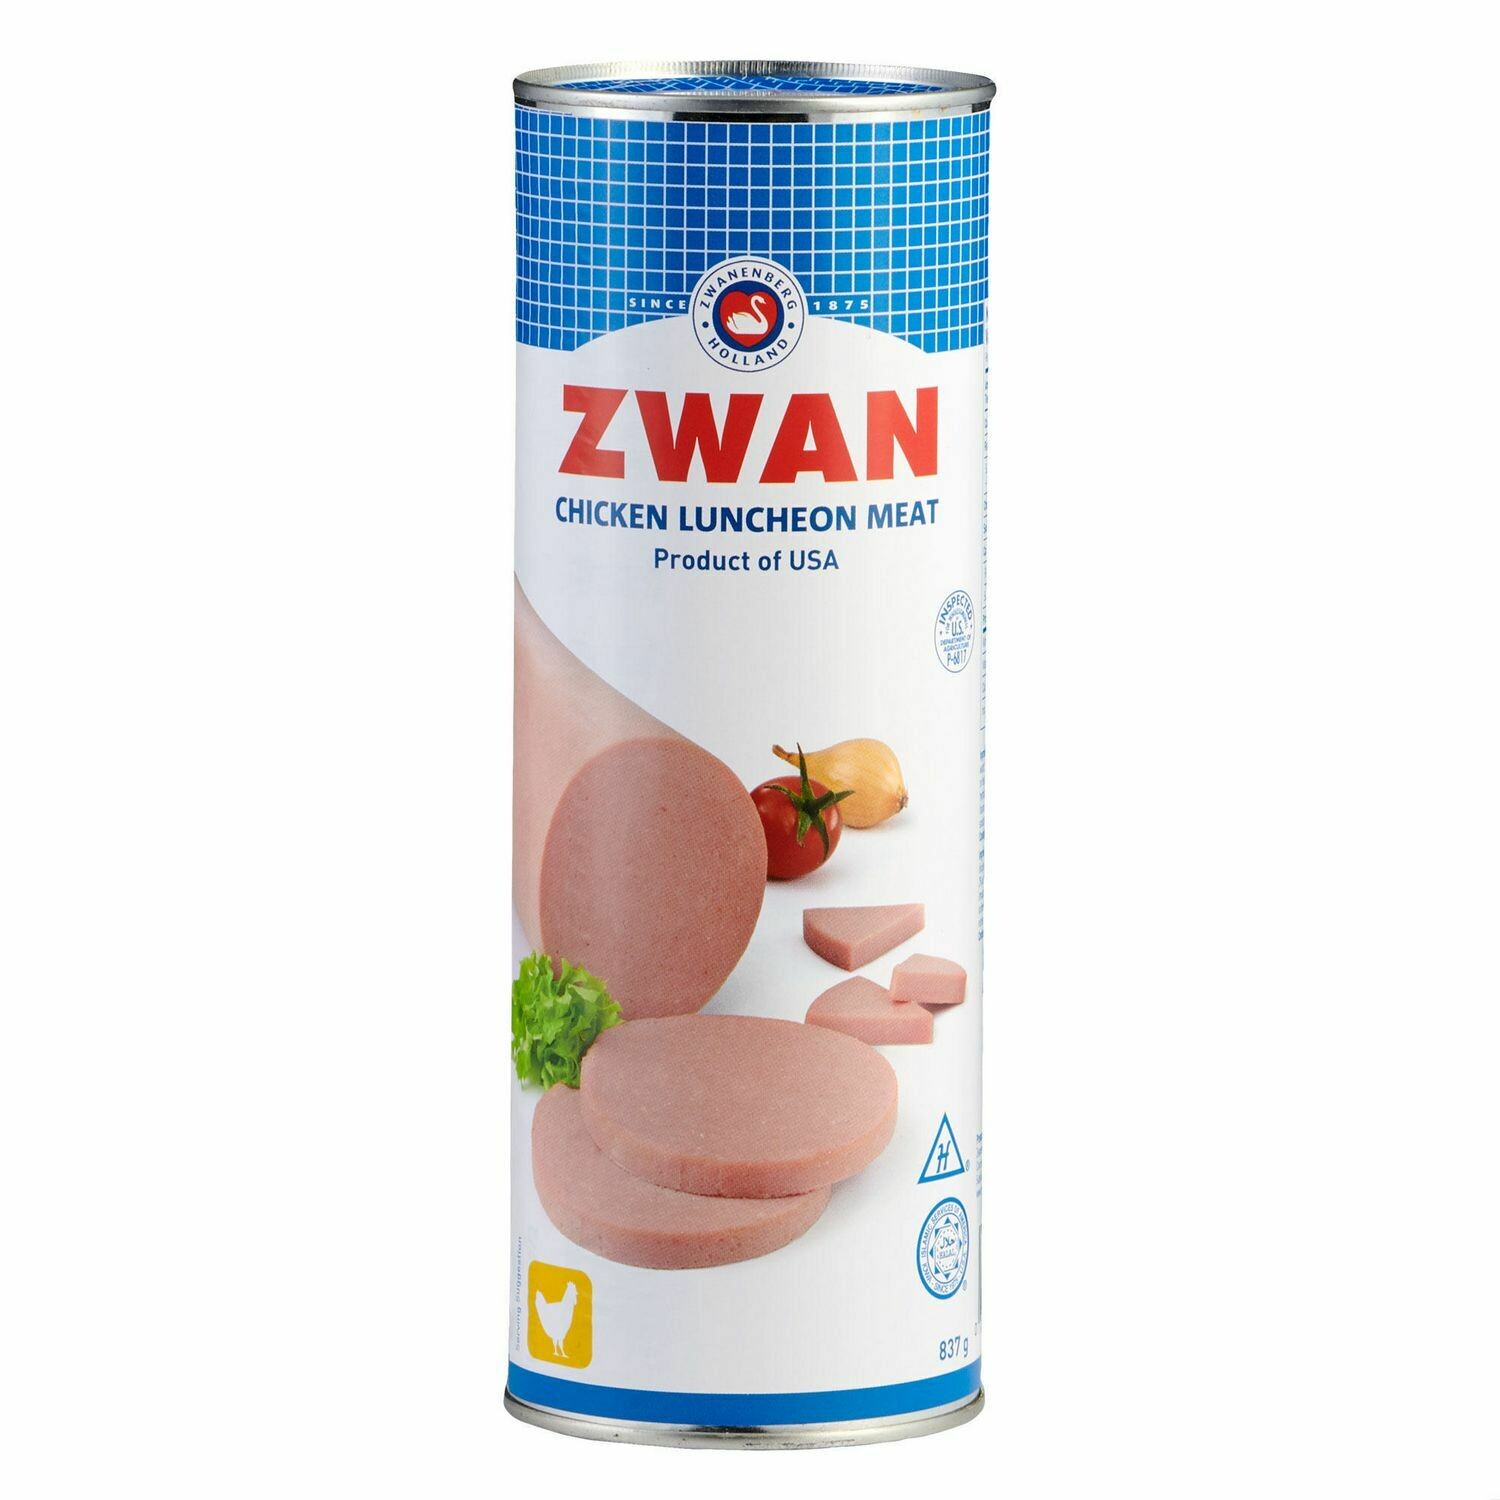 Zwan Luncheon Halal Loaf Meat, Chicken 29.5 oz